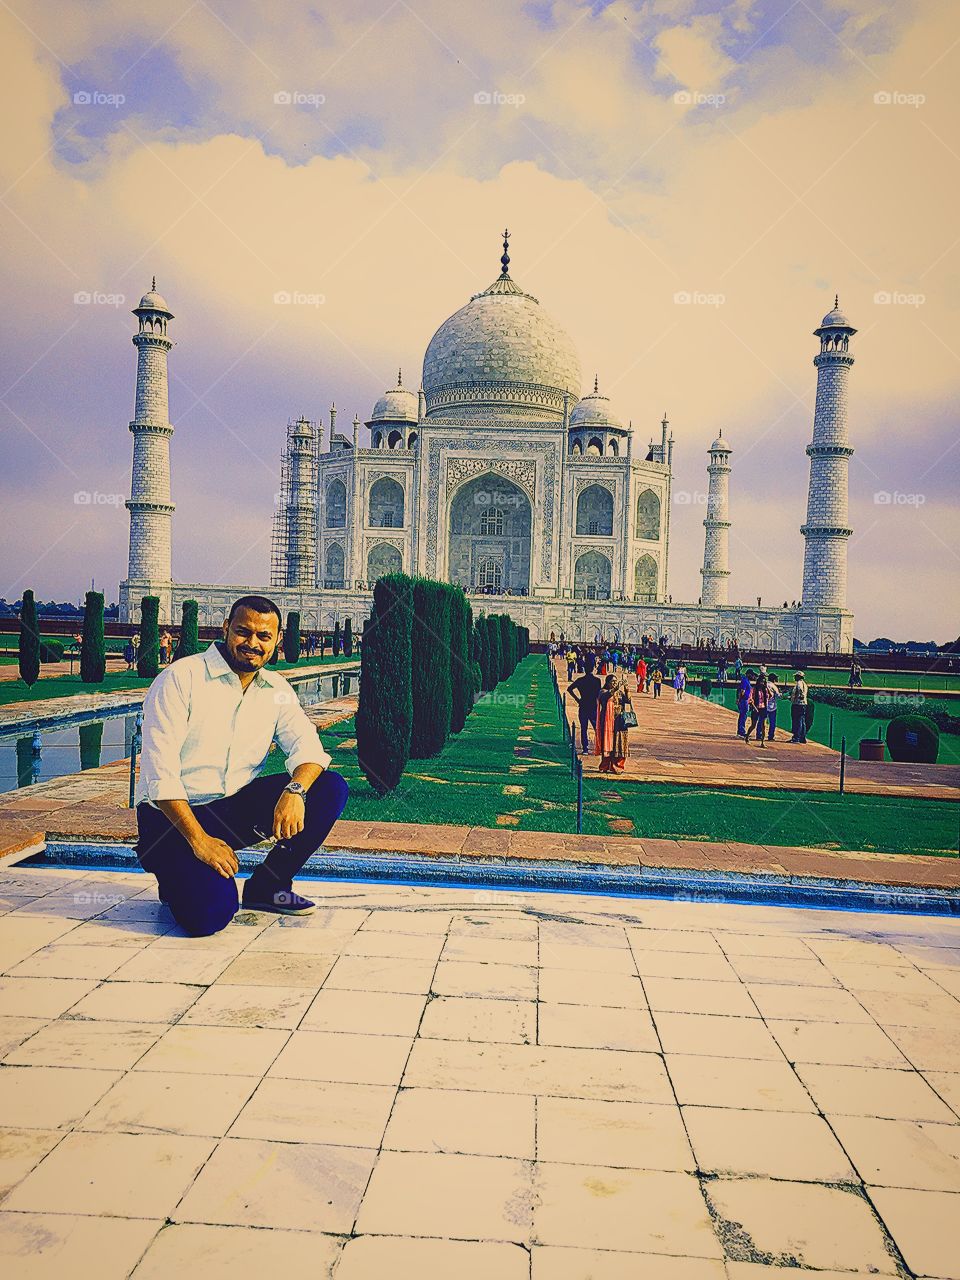 Me in front of The Taj